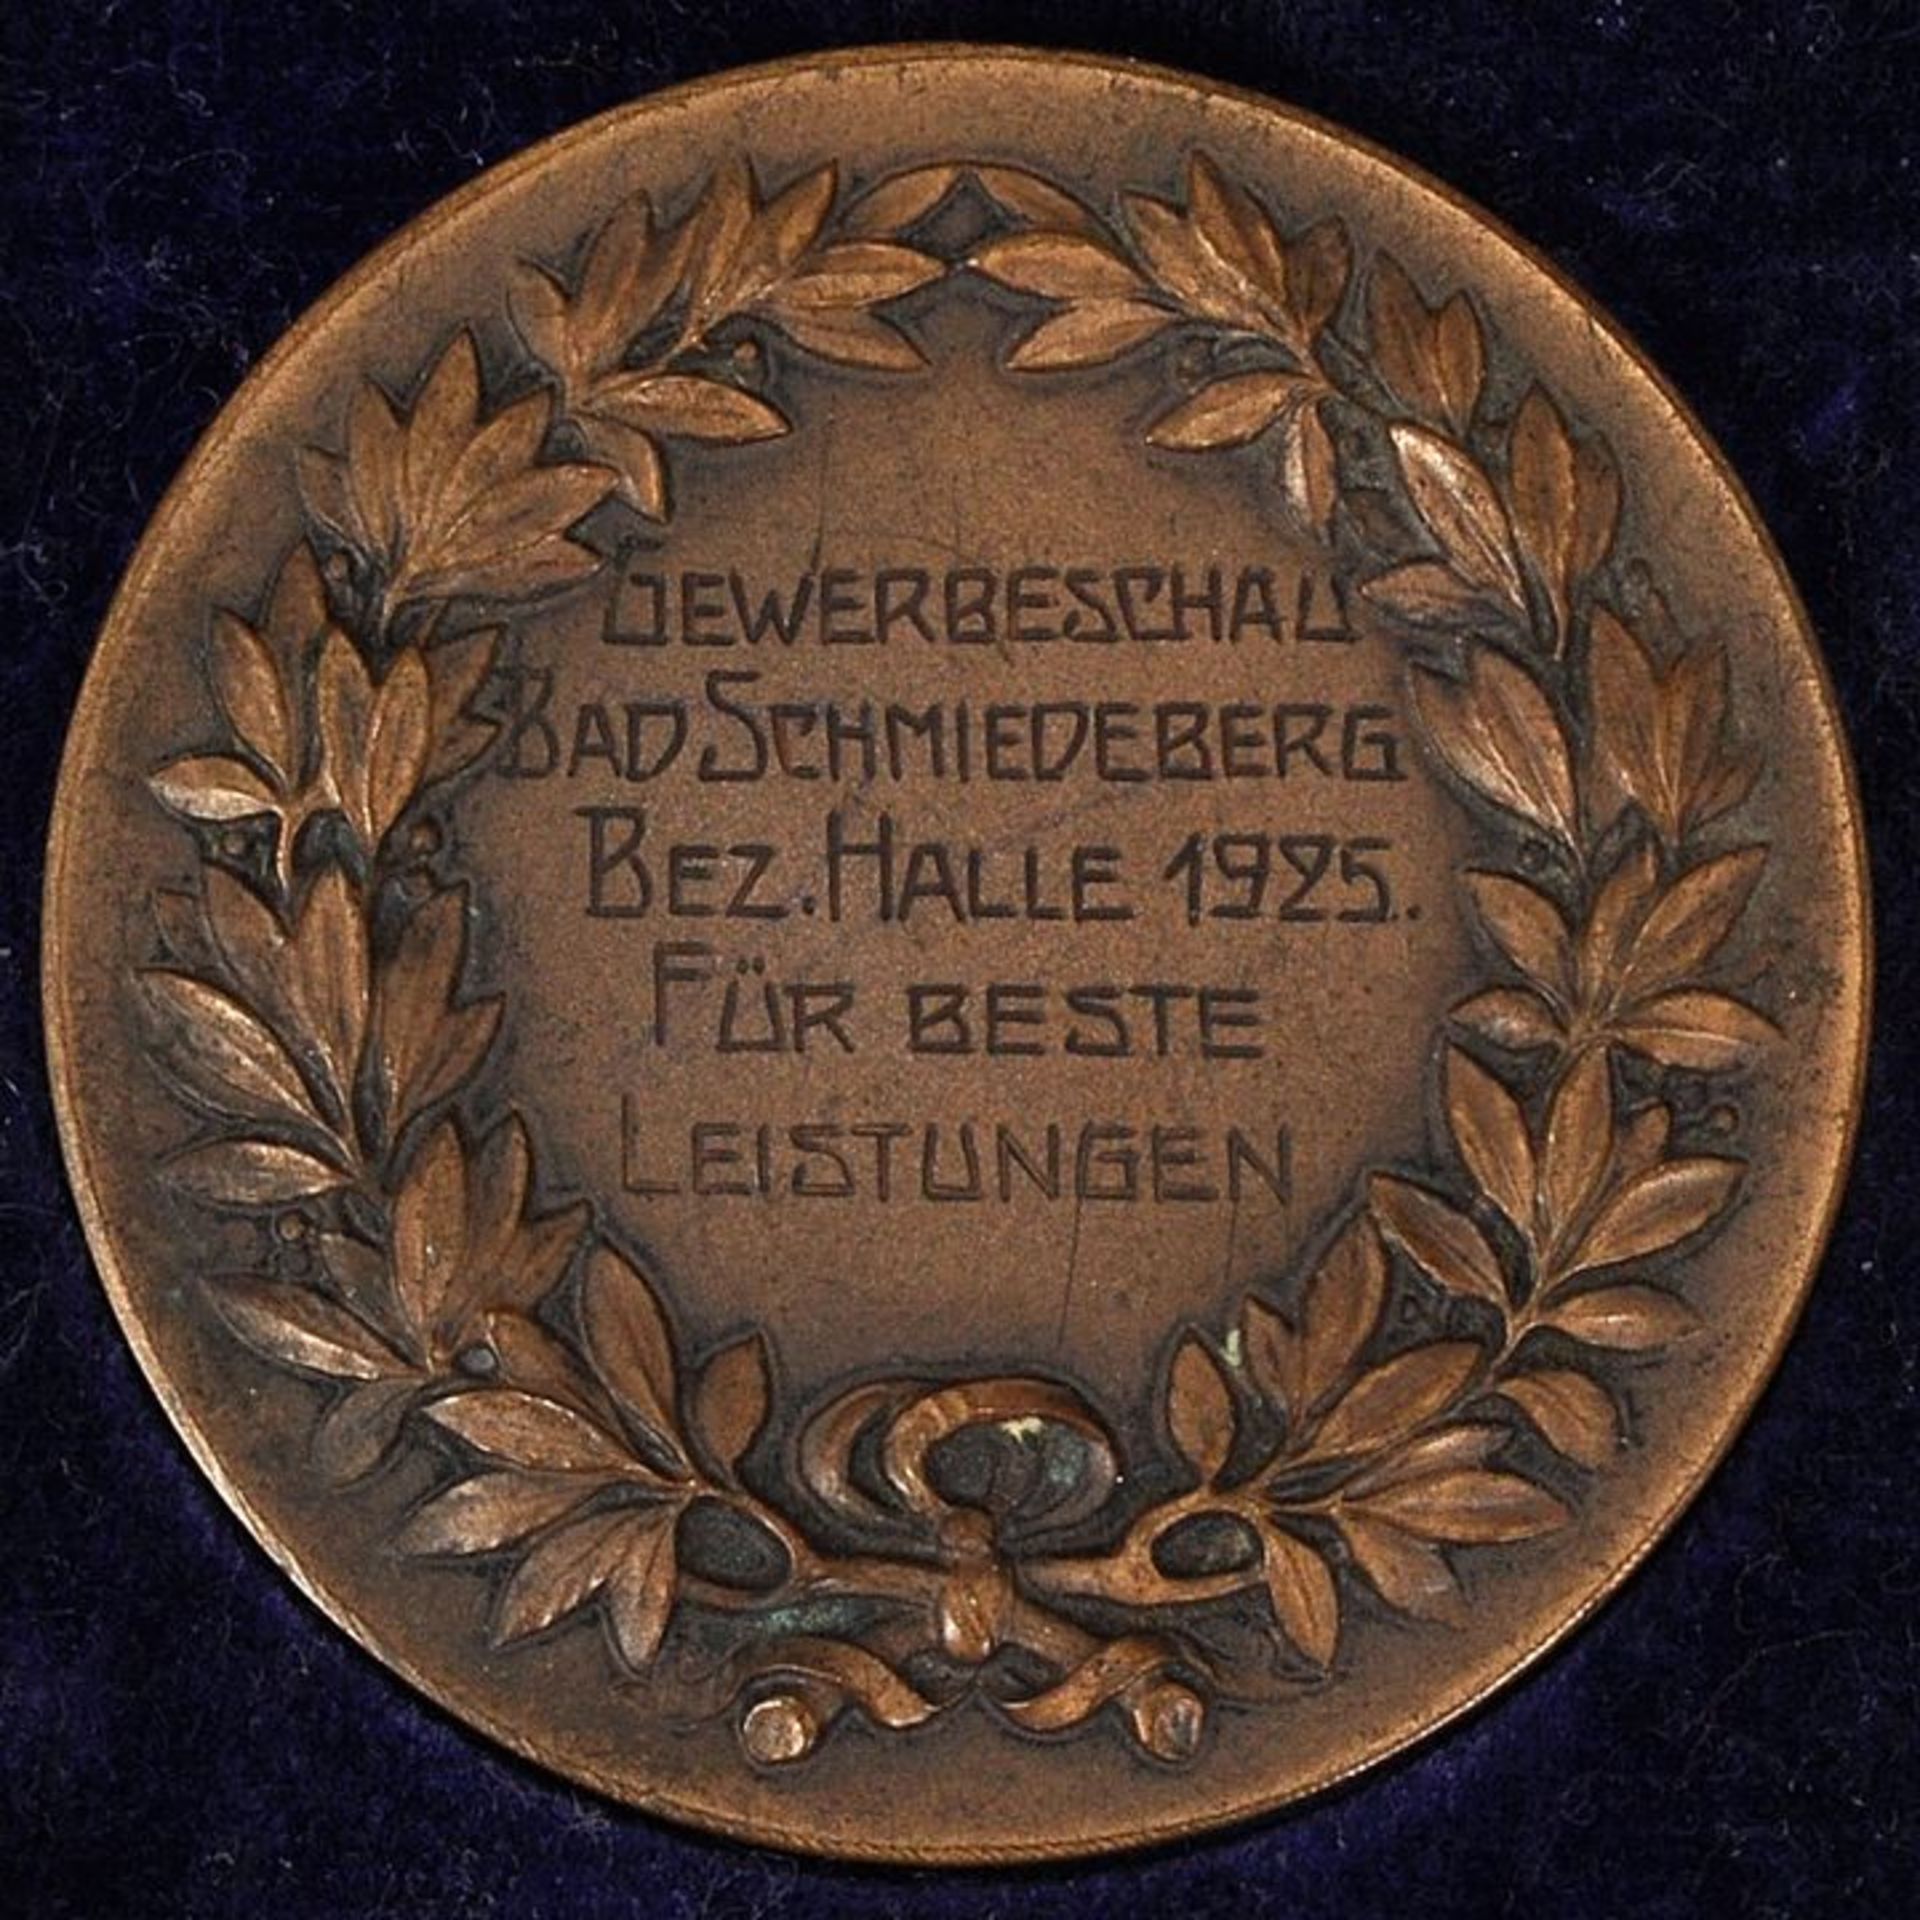 Medaille Halle / Medal